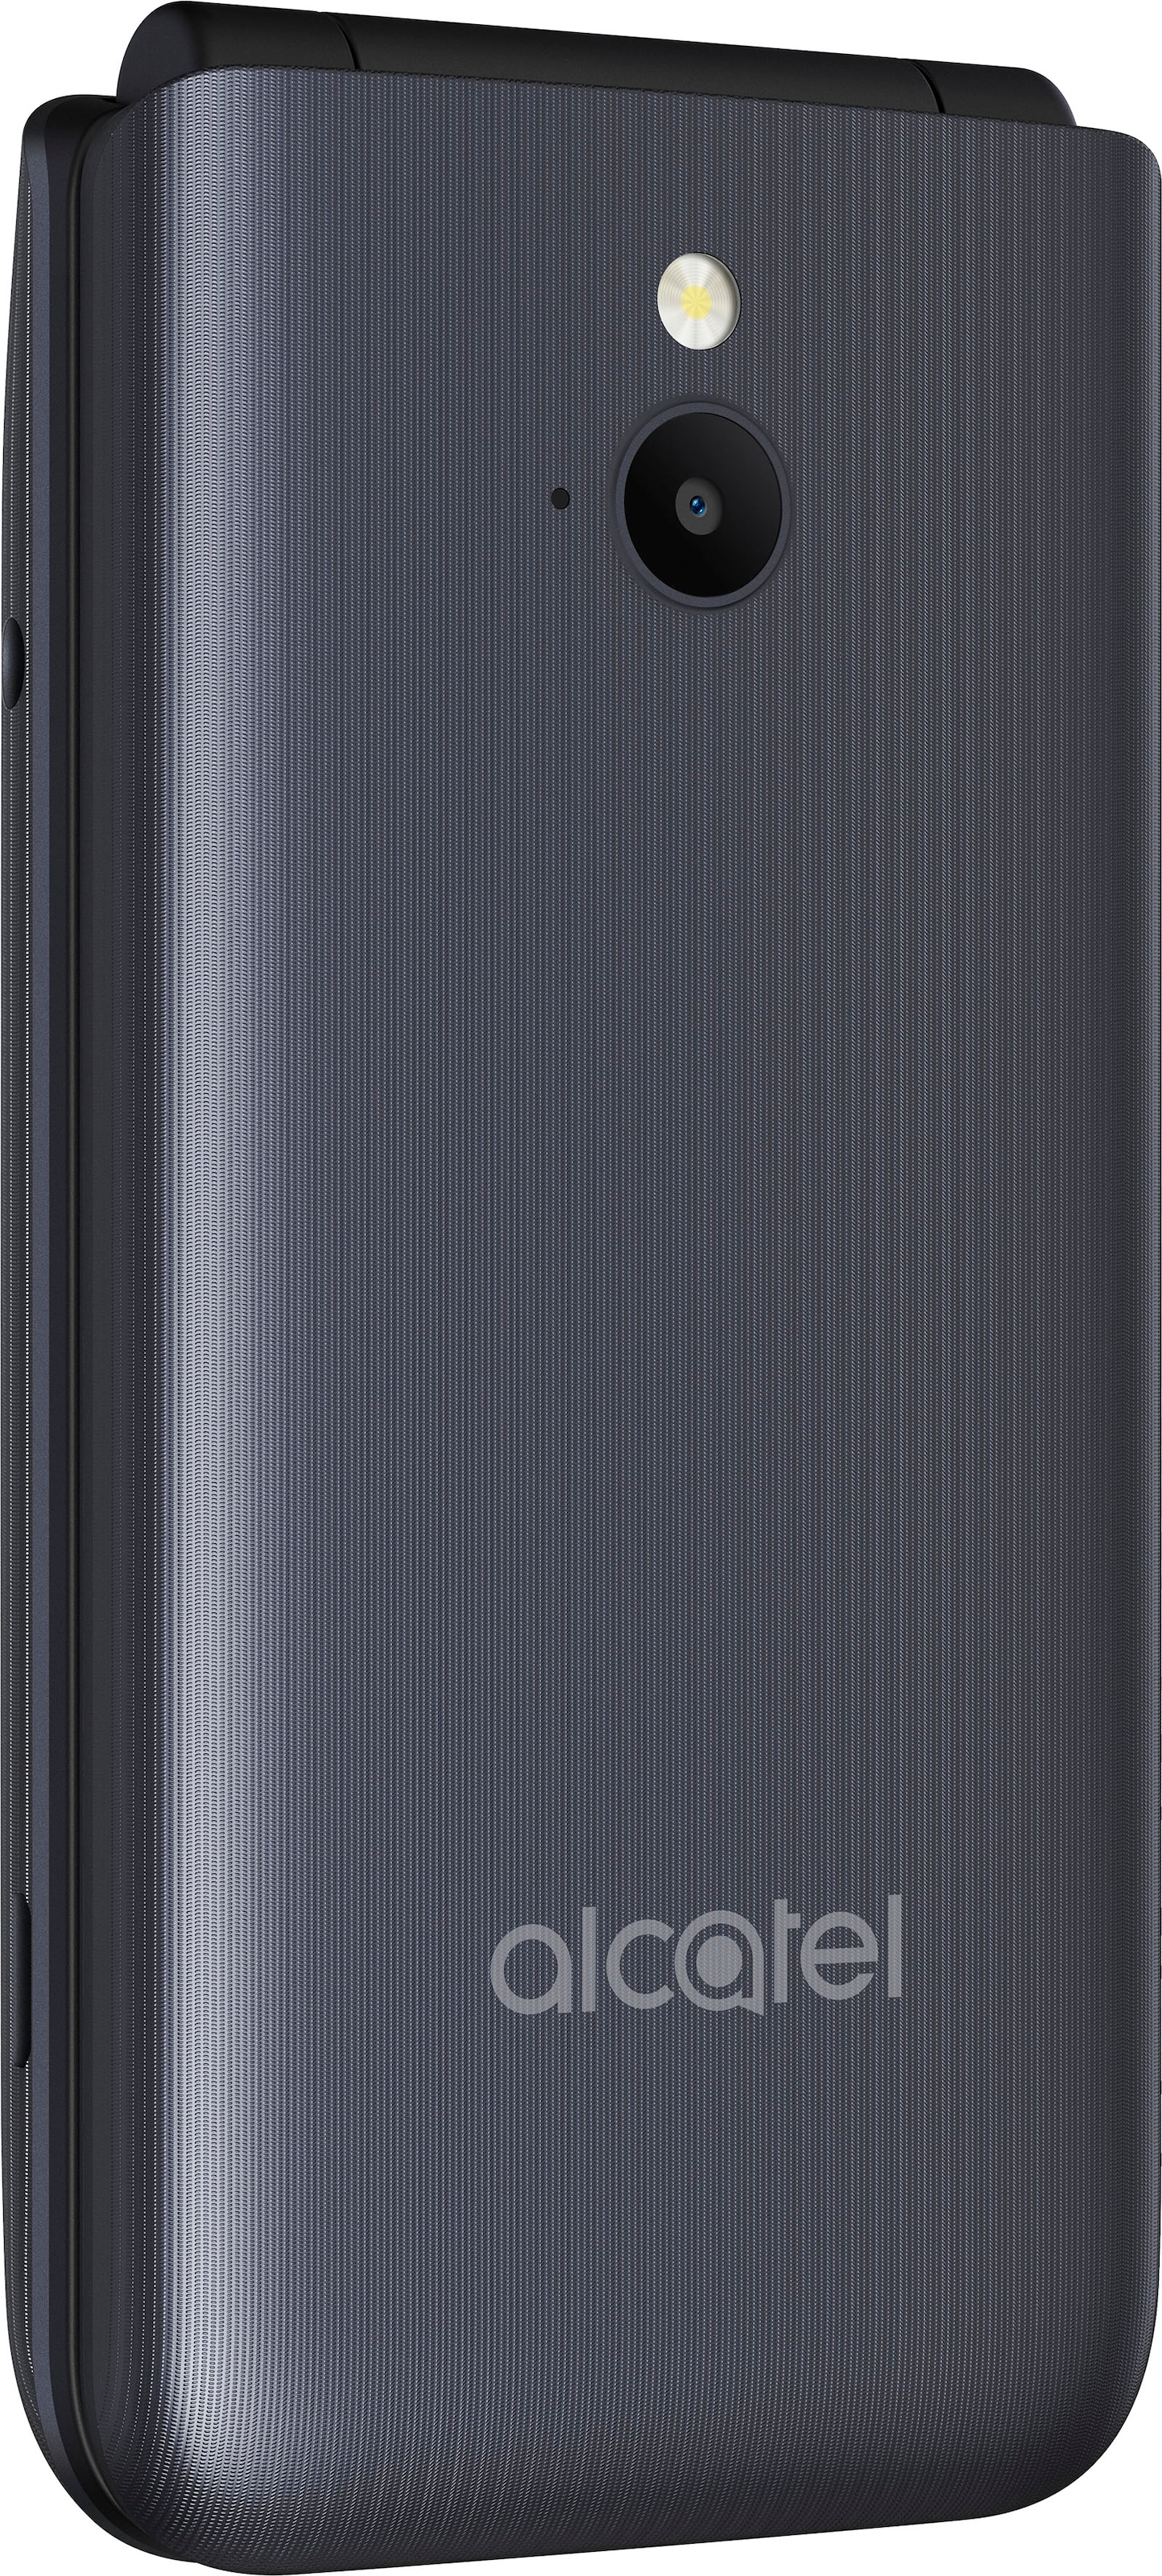 Alcatel Handy »3082«, Dark Gray, 6,1 cm/2,4 Zoll, 0,13 GB Speicherplatz, 1,3  MP Kamera jetzt im OTTO Online Shop